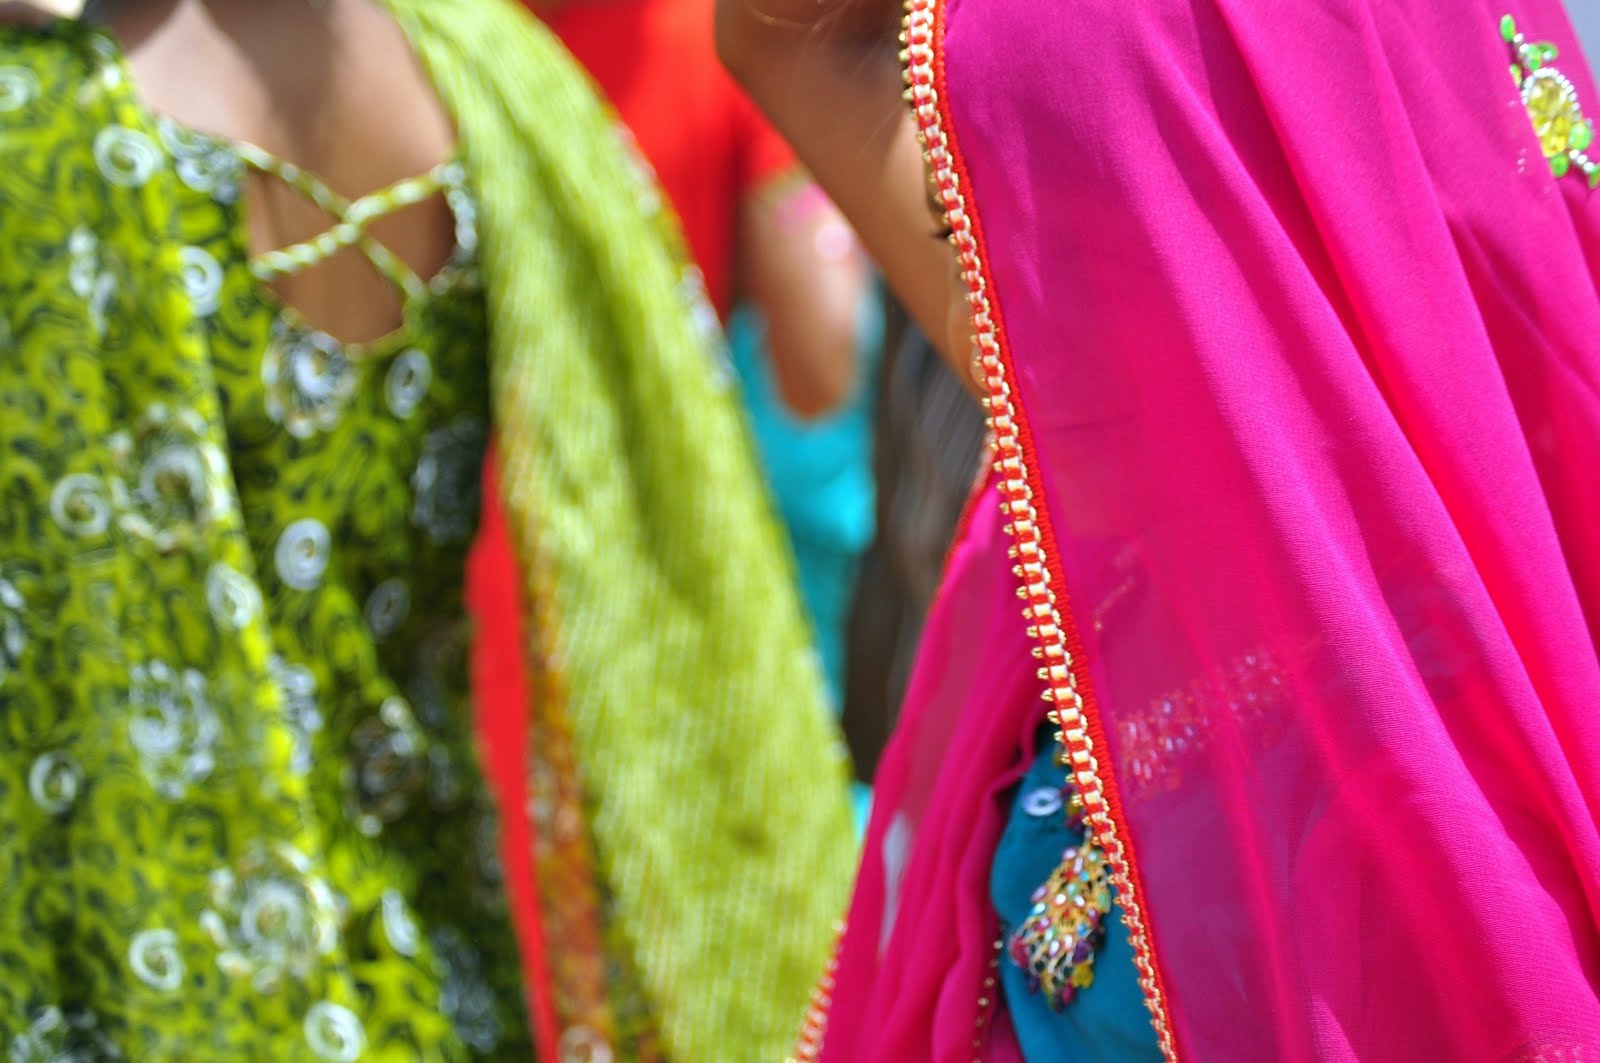 Tarnetar Fair: A marriage fair in Gujarat!